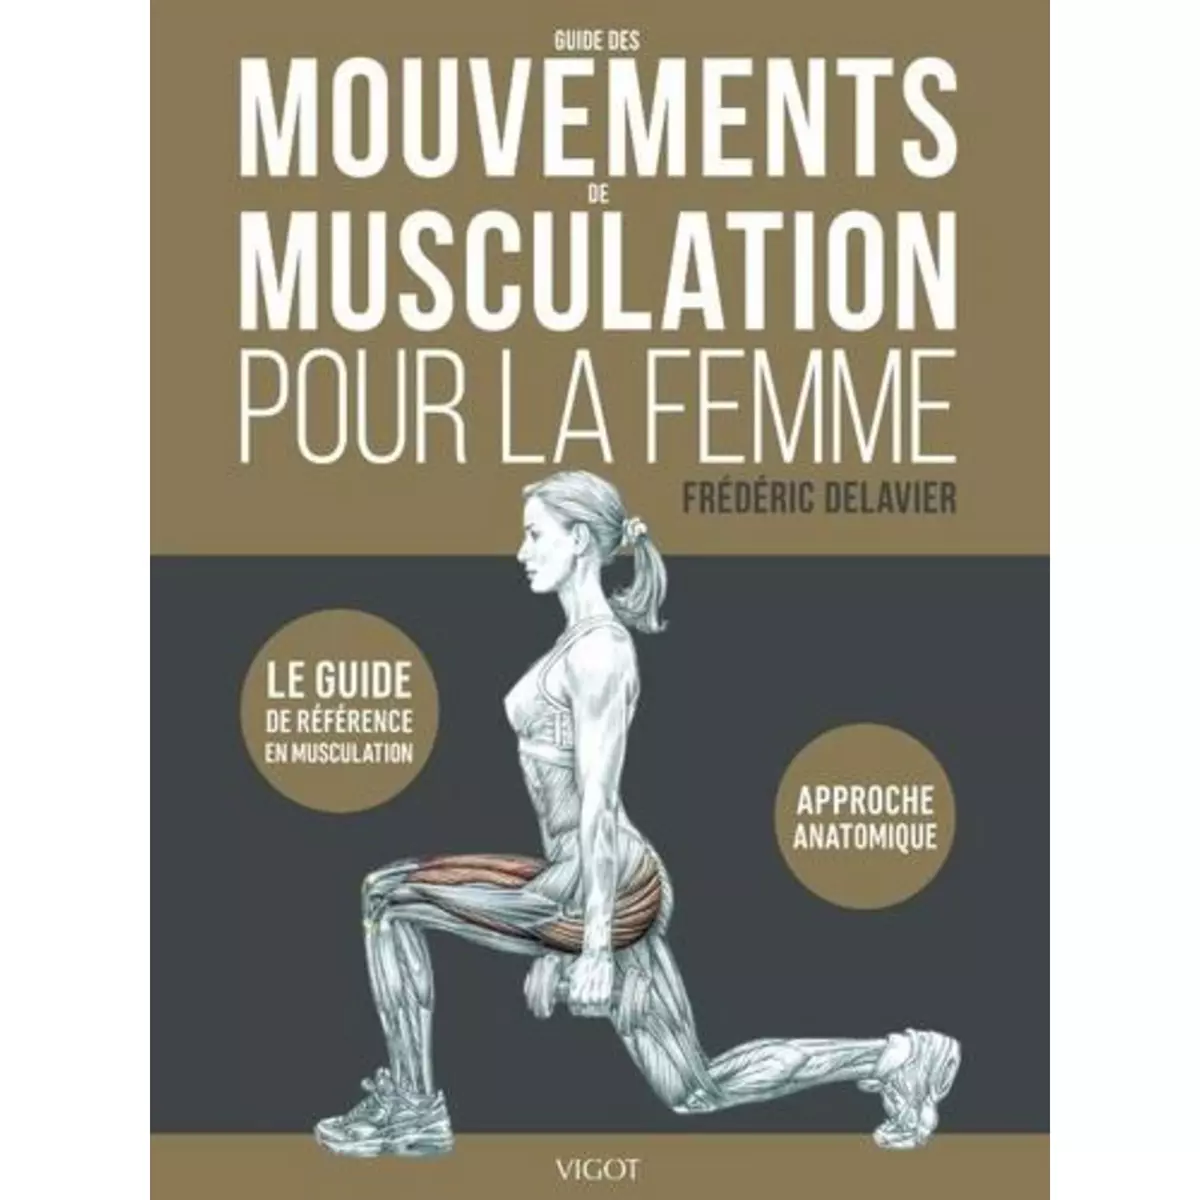  GUIDE DES MOUVEMENTS DE MUSCULATION POUR LA FEMME, Delavier Frédéric